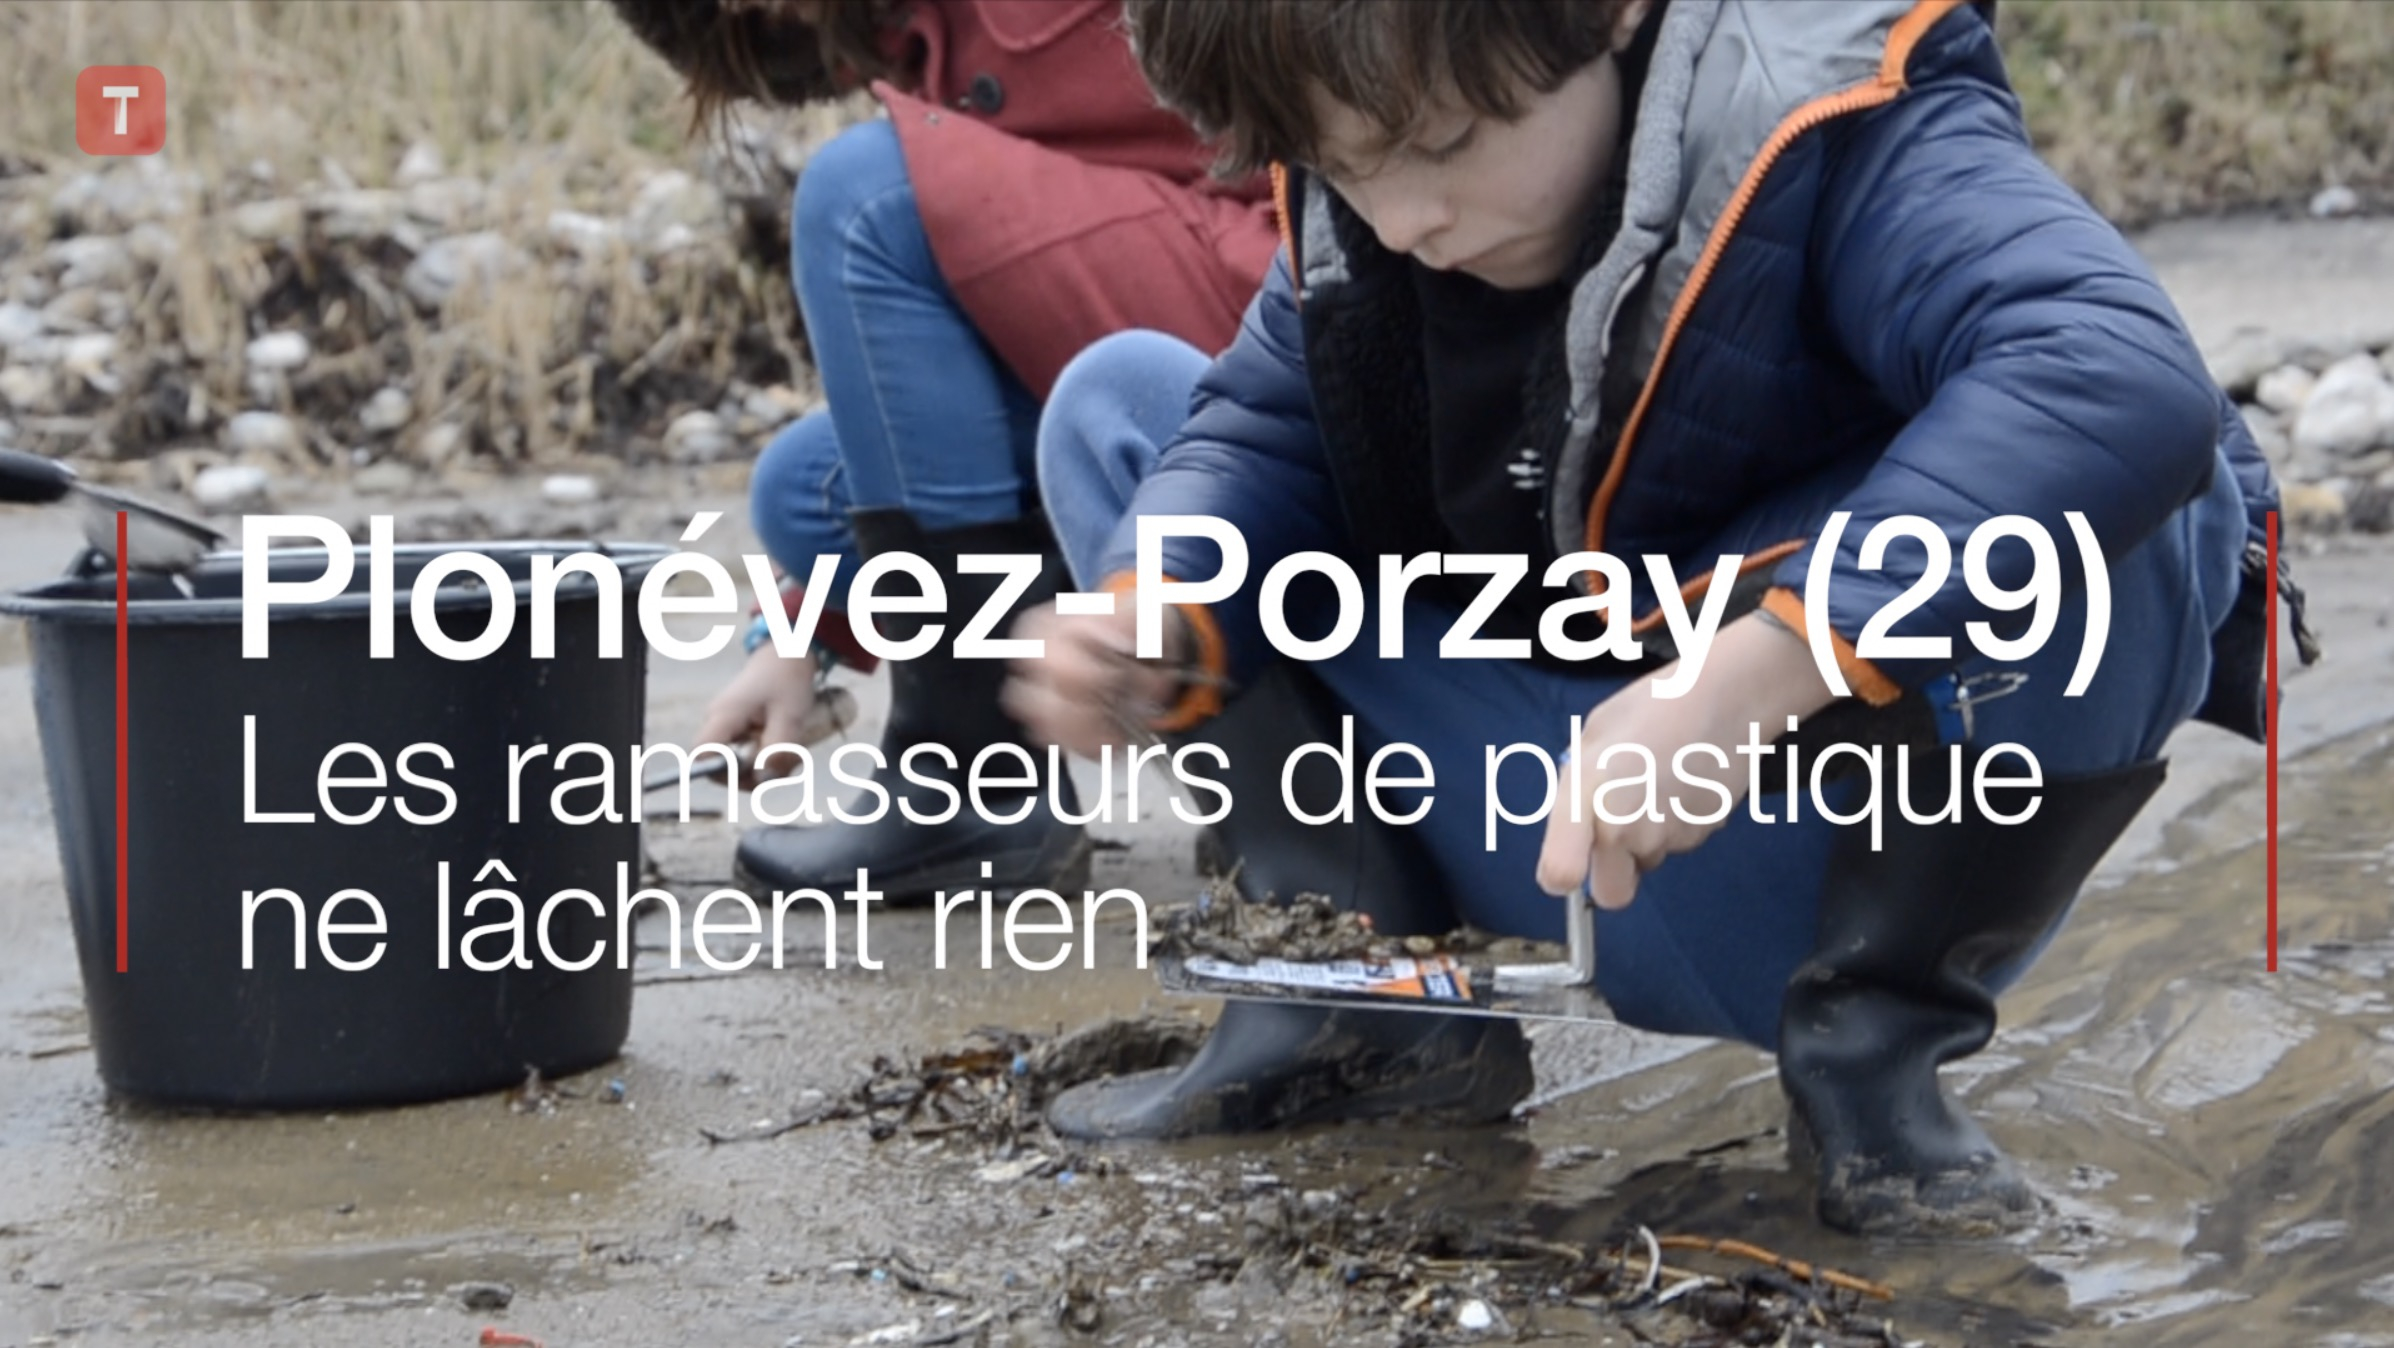 Plonévez-Porzay (29). Les ramasseurs de plastique ne lâchent rien (Le Télégramme)